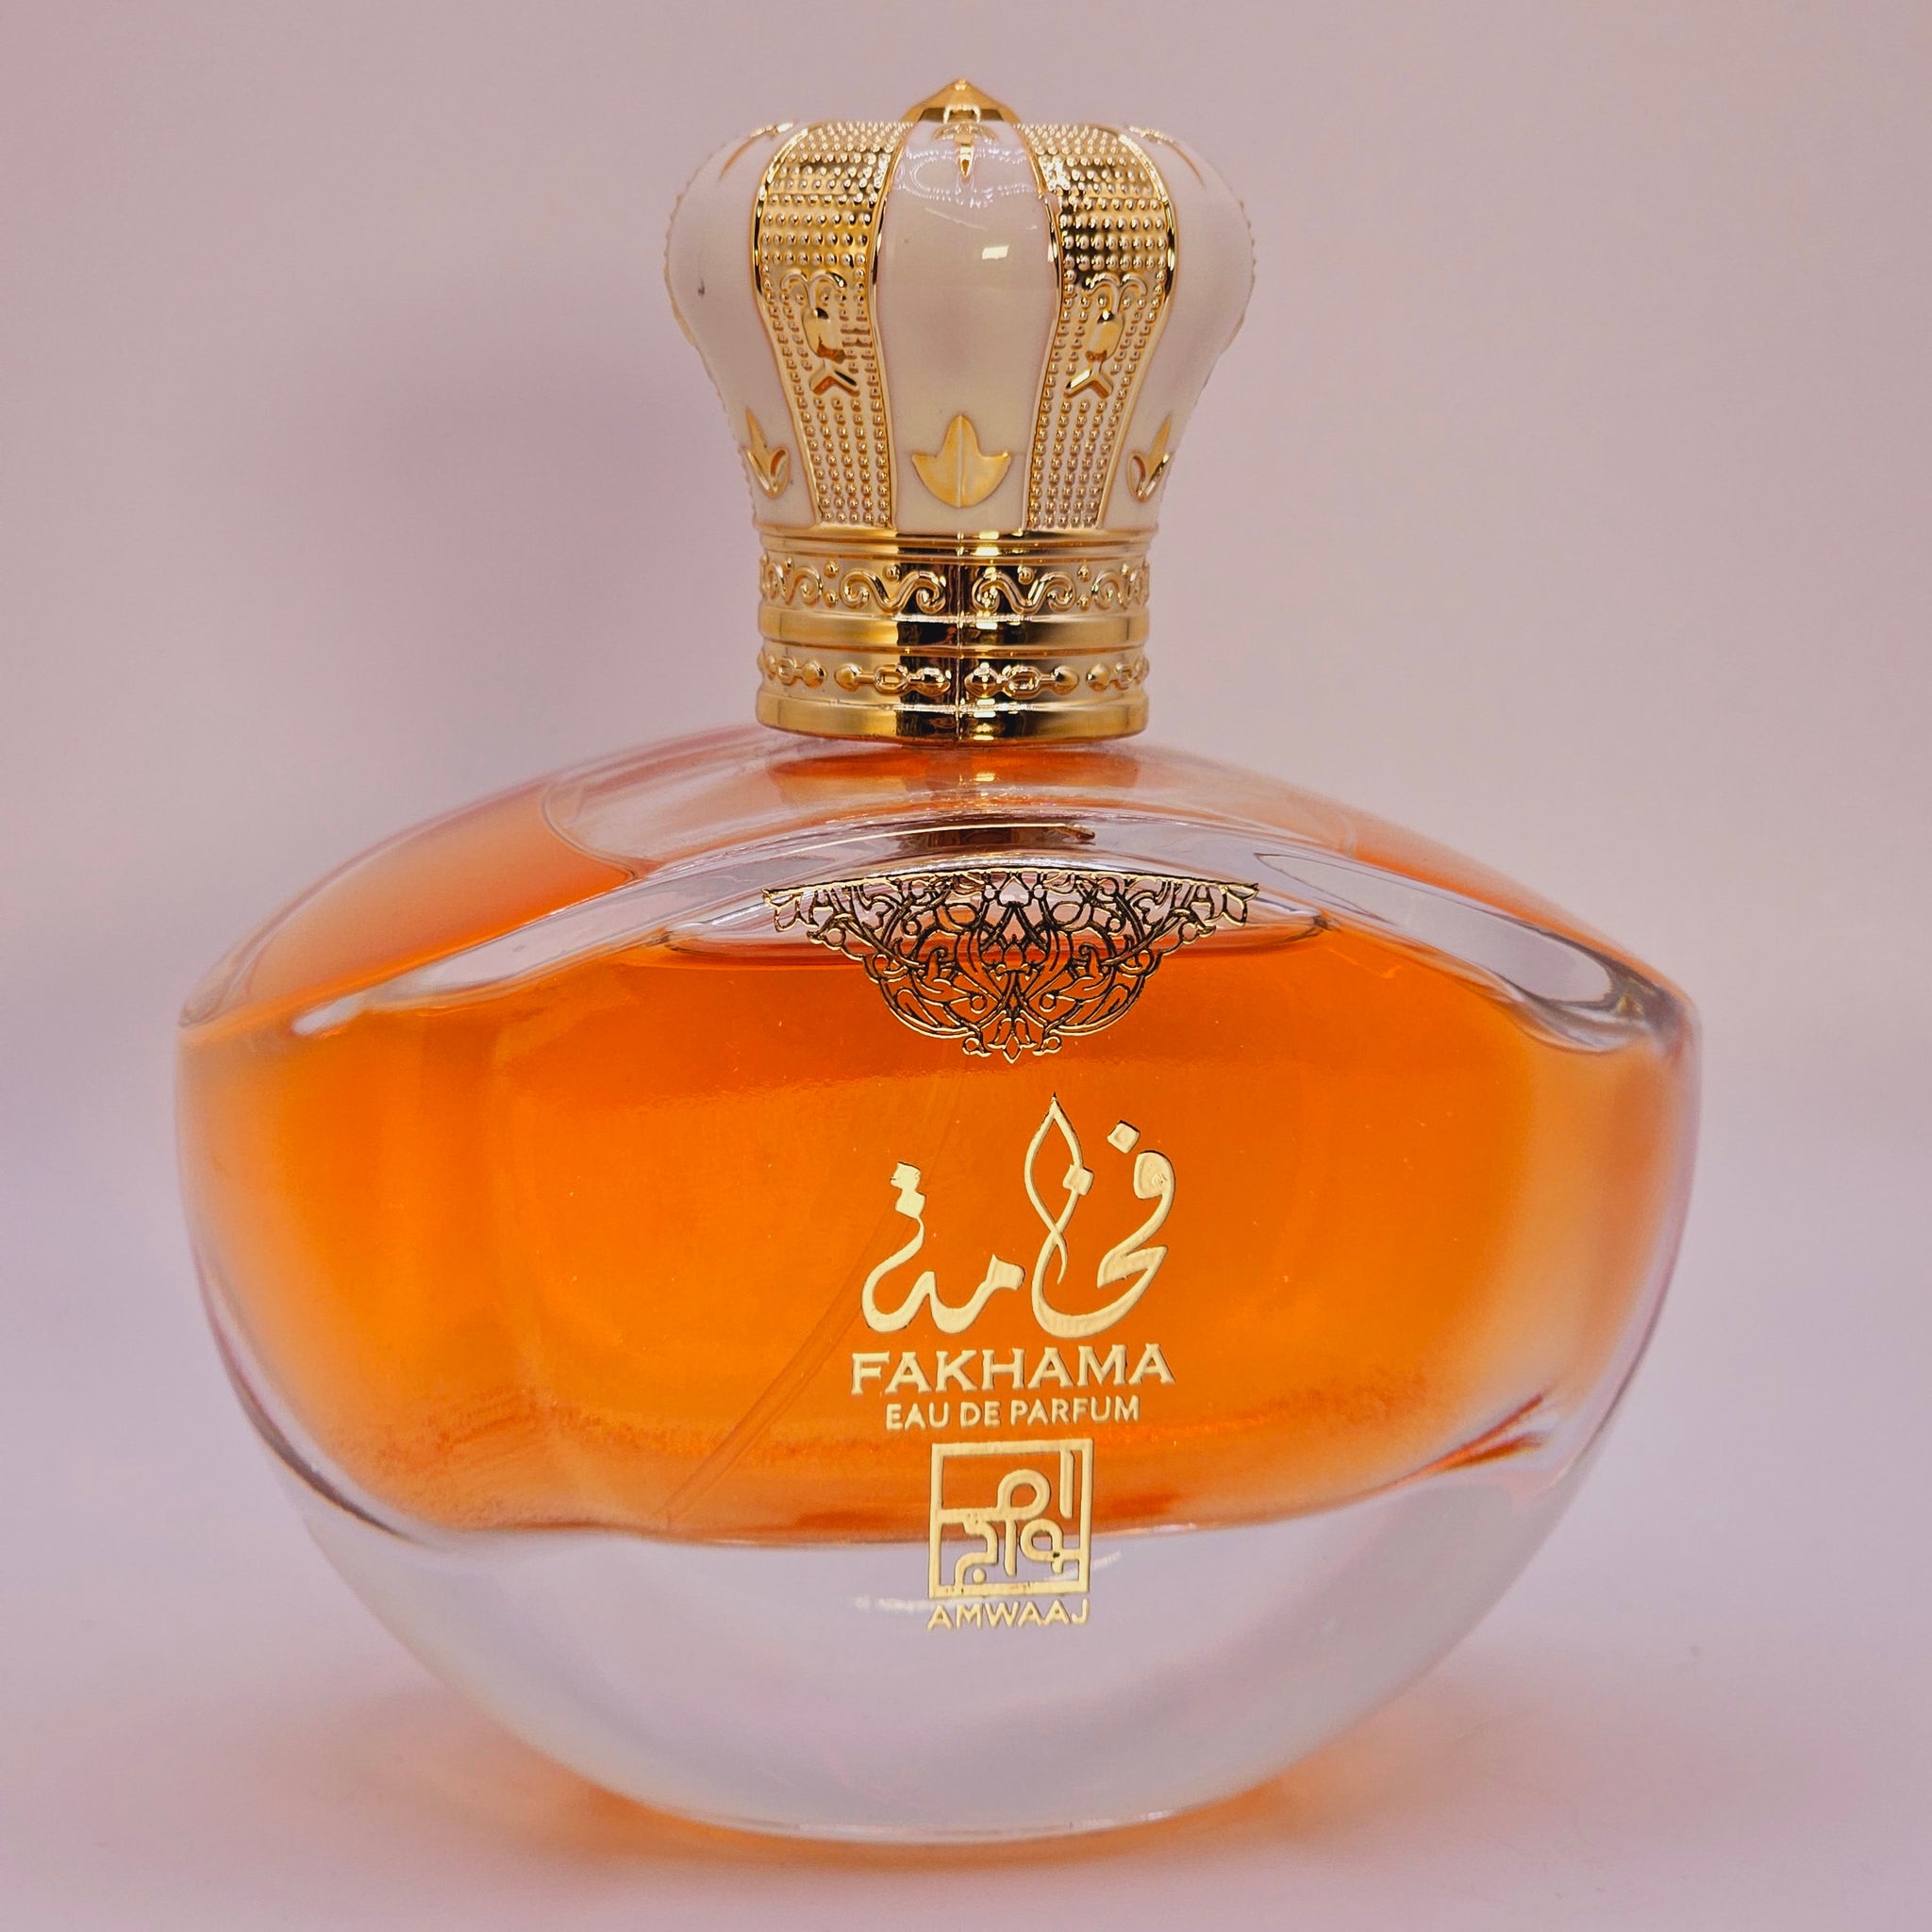 Fakhama Eau De Parfum 3.4 Oz By Amwaaj For Women Floral Fruity